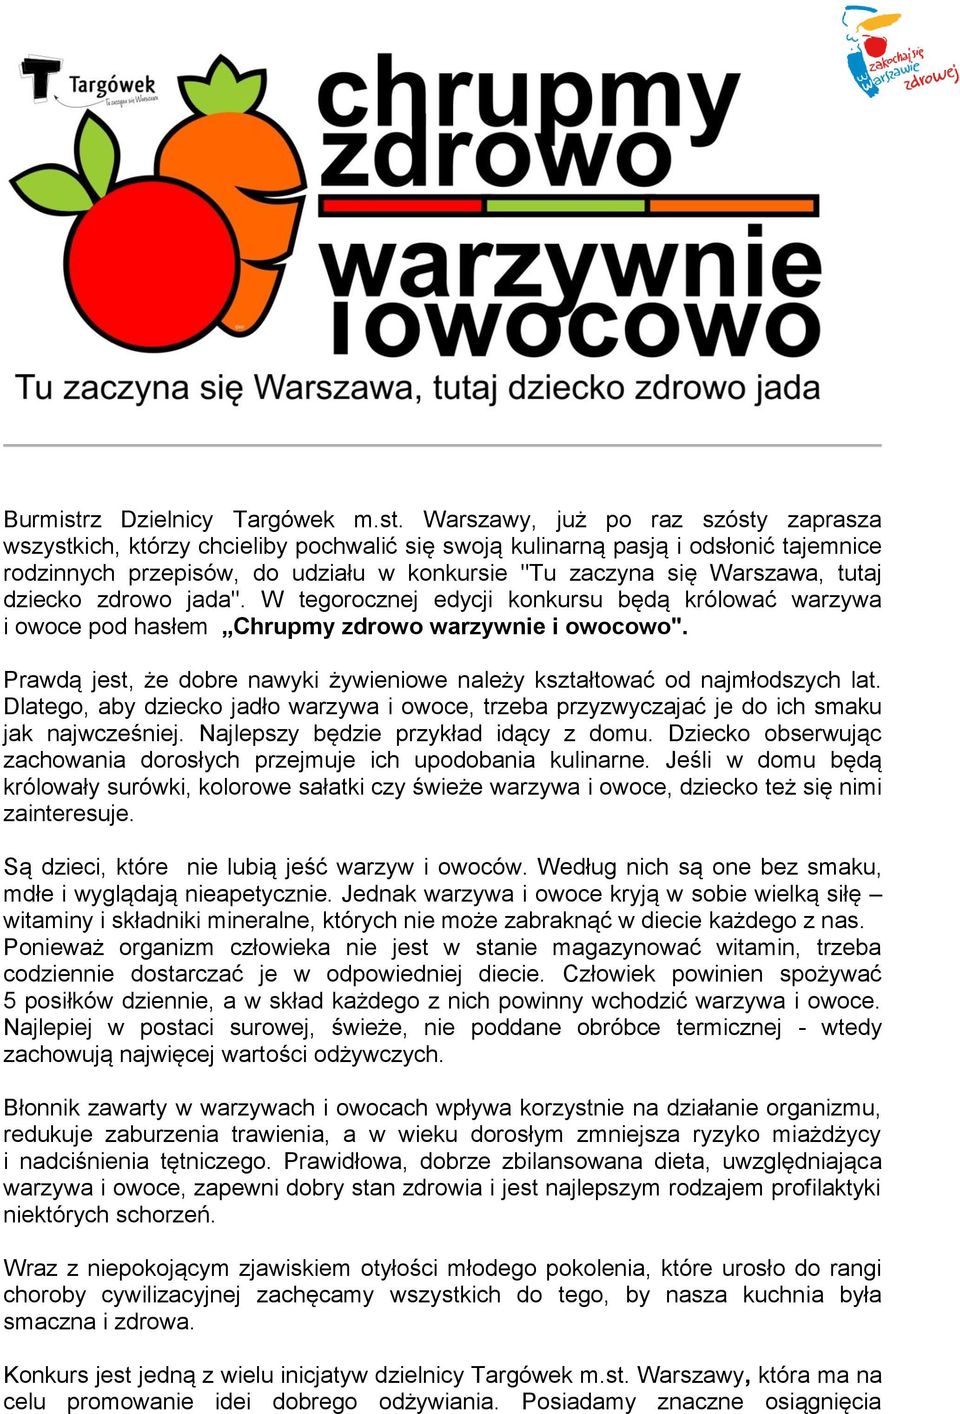 Warszawy, już po raz szósty zaprasza wszystkich, którzy chcieliby pochwalić się swoją kulinarną pasją i odsłonić tajemnice rodzinnych przepisów, do udziału w konkursie "Tu zaczyna się Warszawa, tutaj